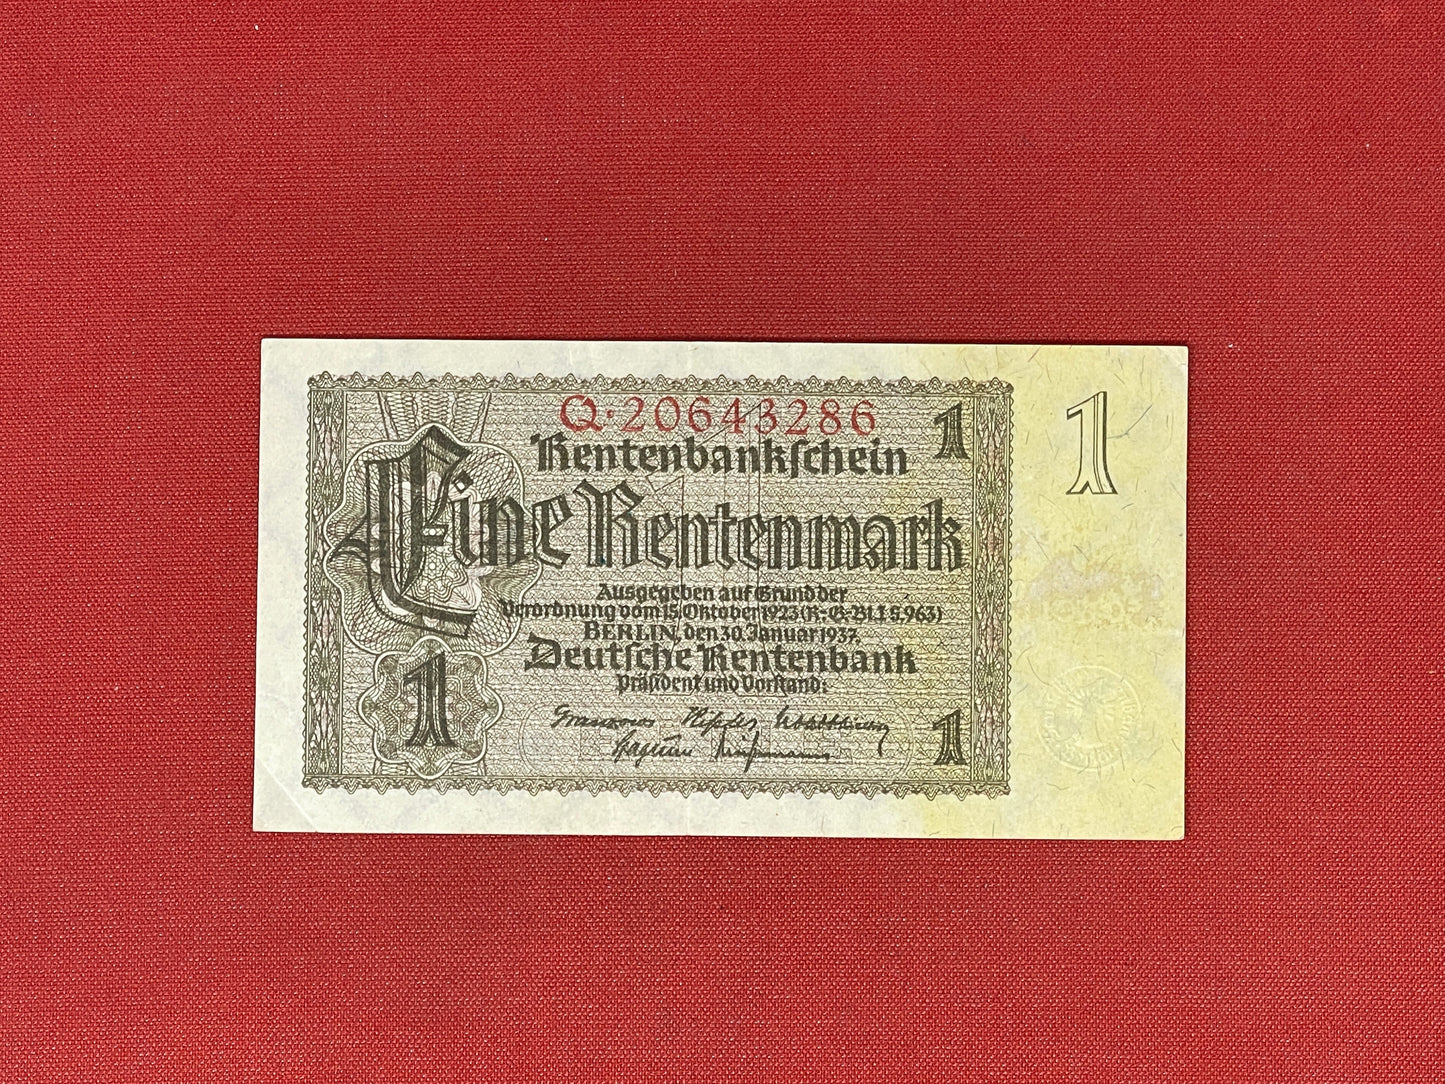 Germany 1 Rentenmark 1937 Banknote